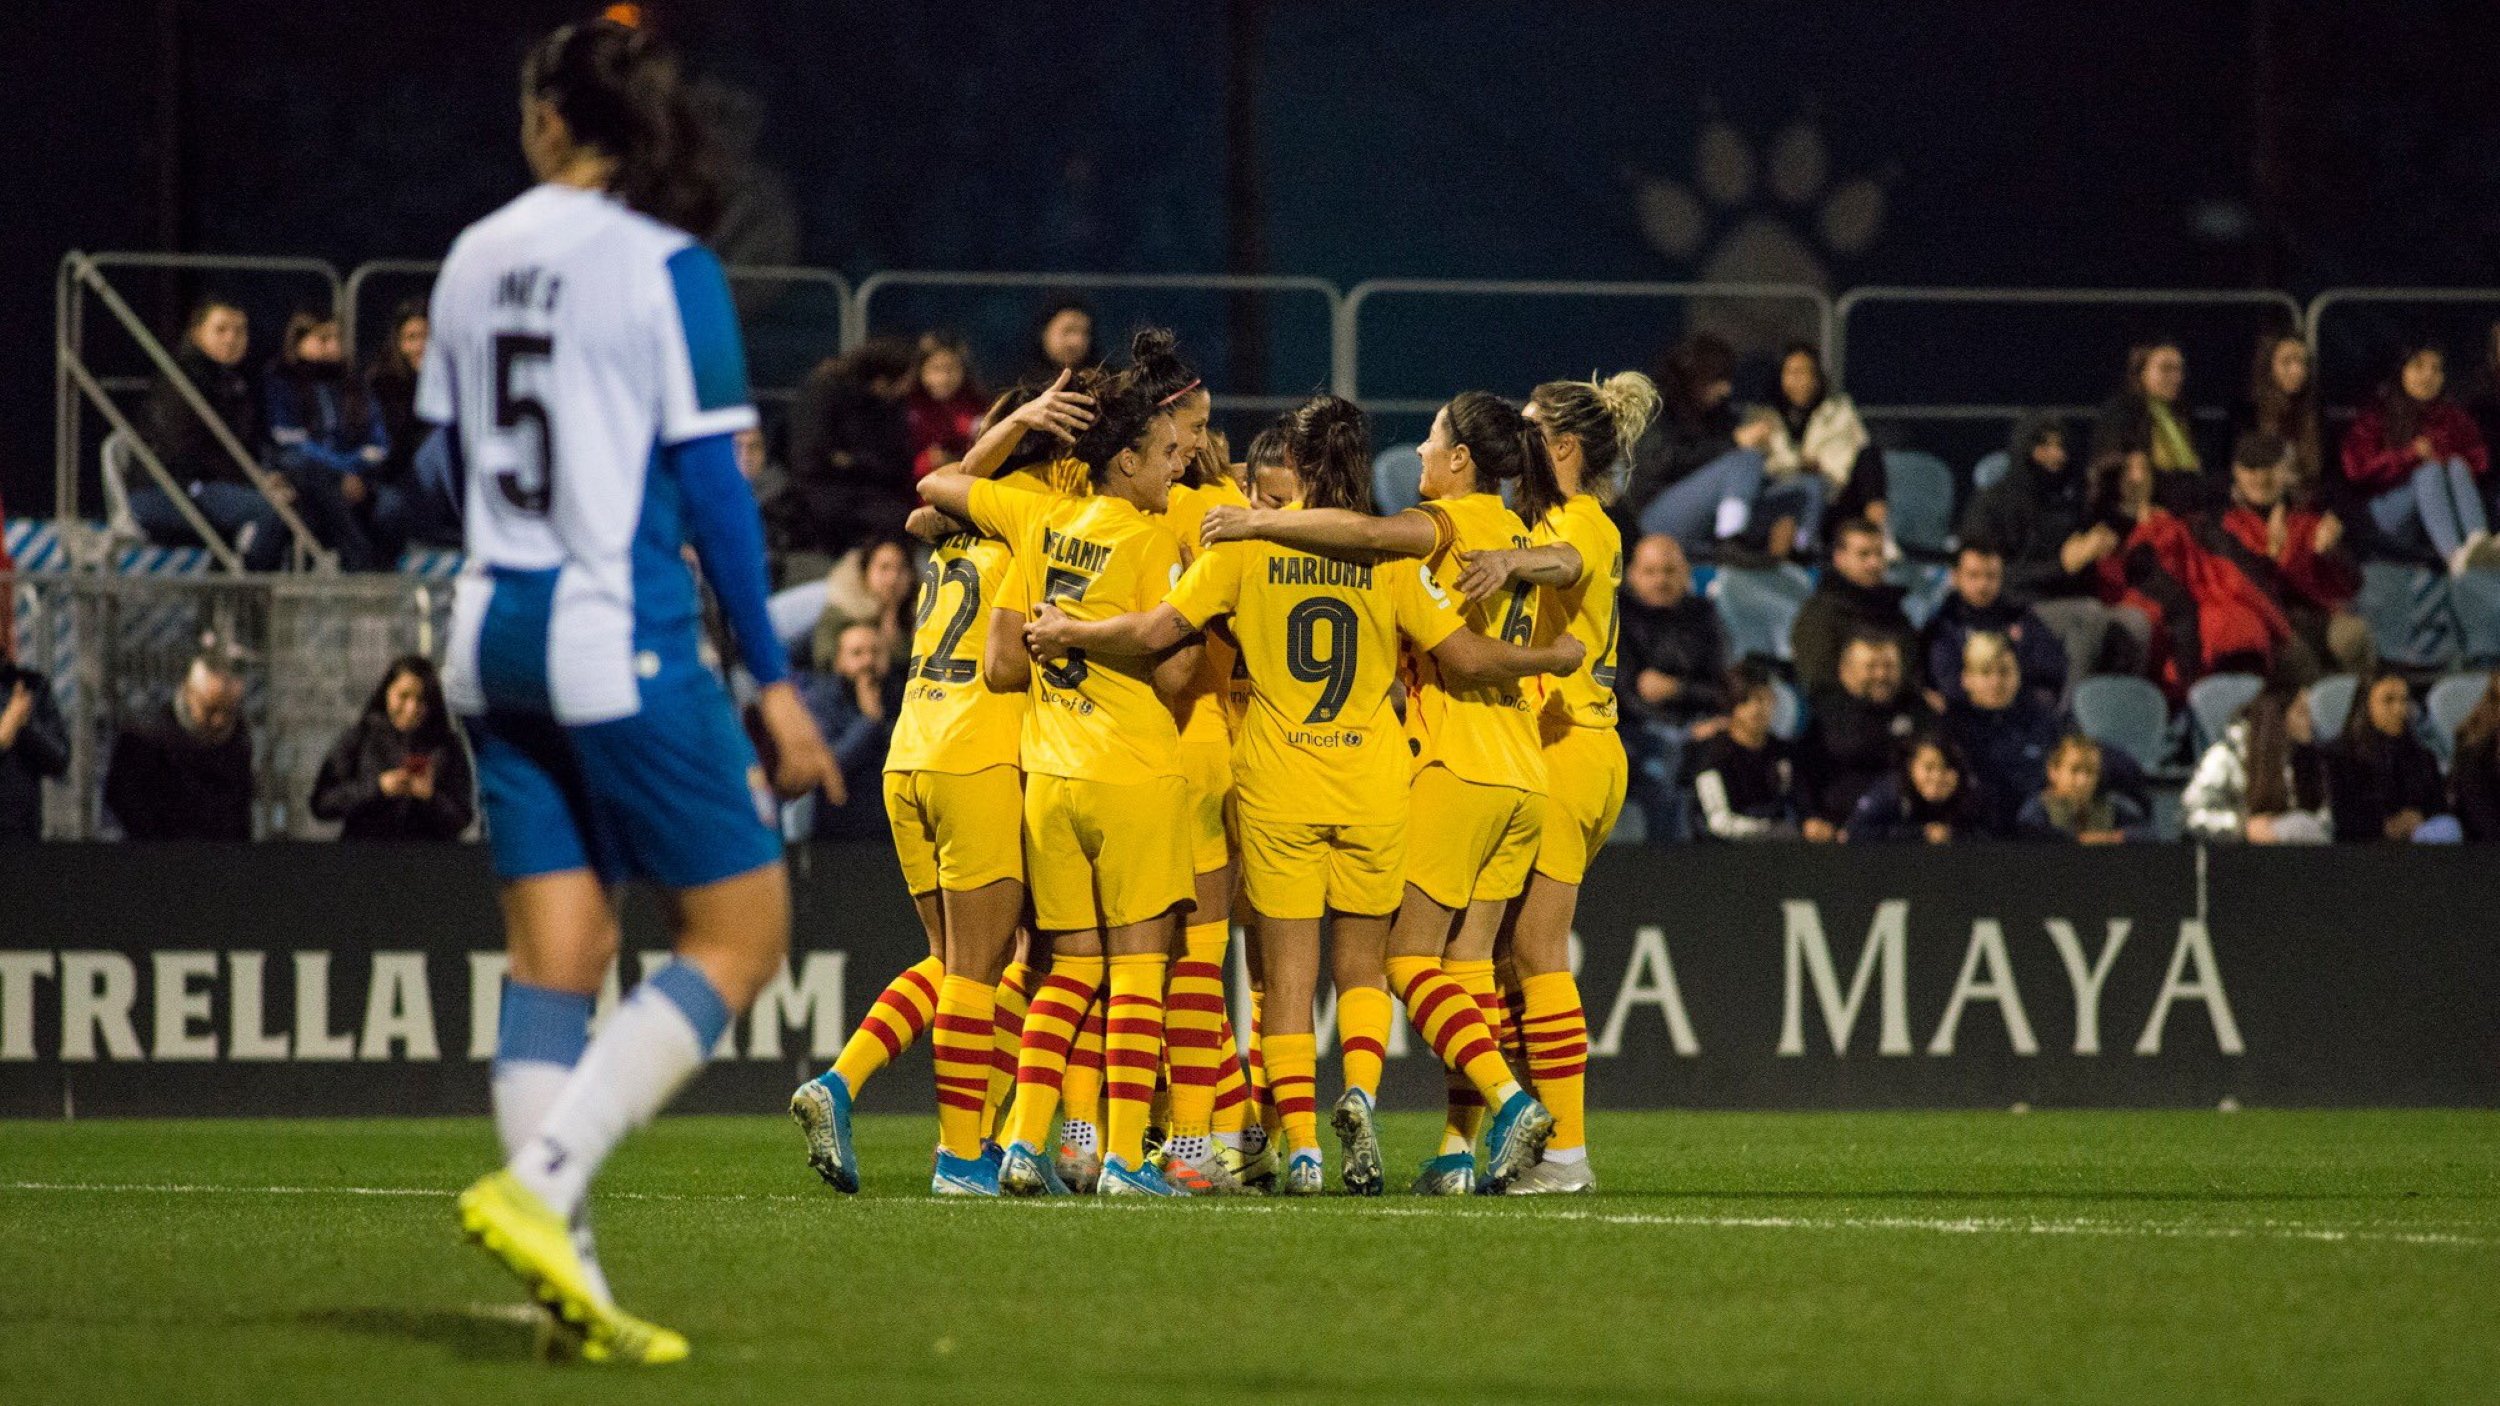 El Barça femenino hunde al Espanyol y es más líder (0-4)